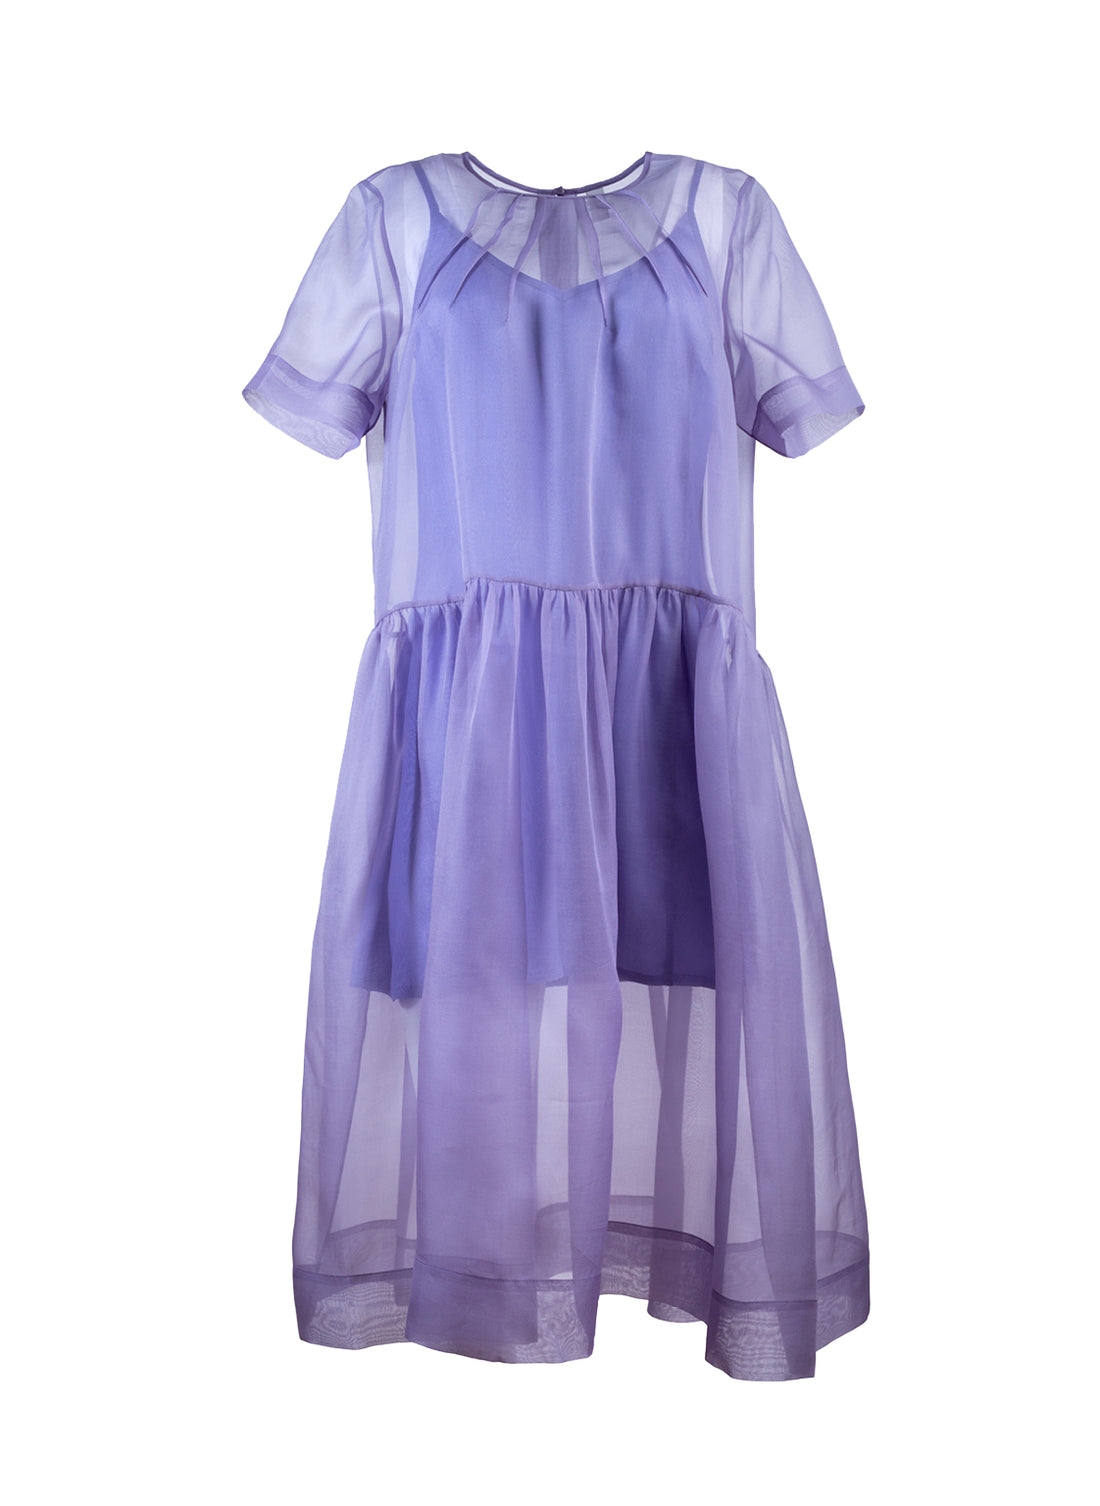 Midi-Kleid aus hochwertiger Organzaseide, kunstvollen Biesen im Brustbereich und passendem Unterkleid aus Viskose-Seiden Mix